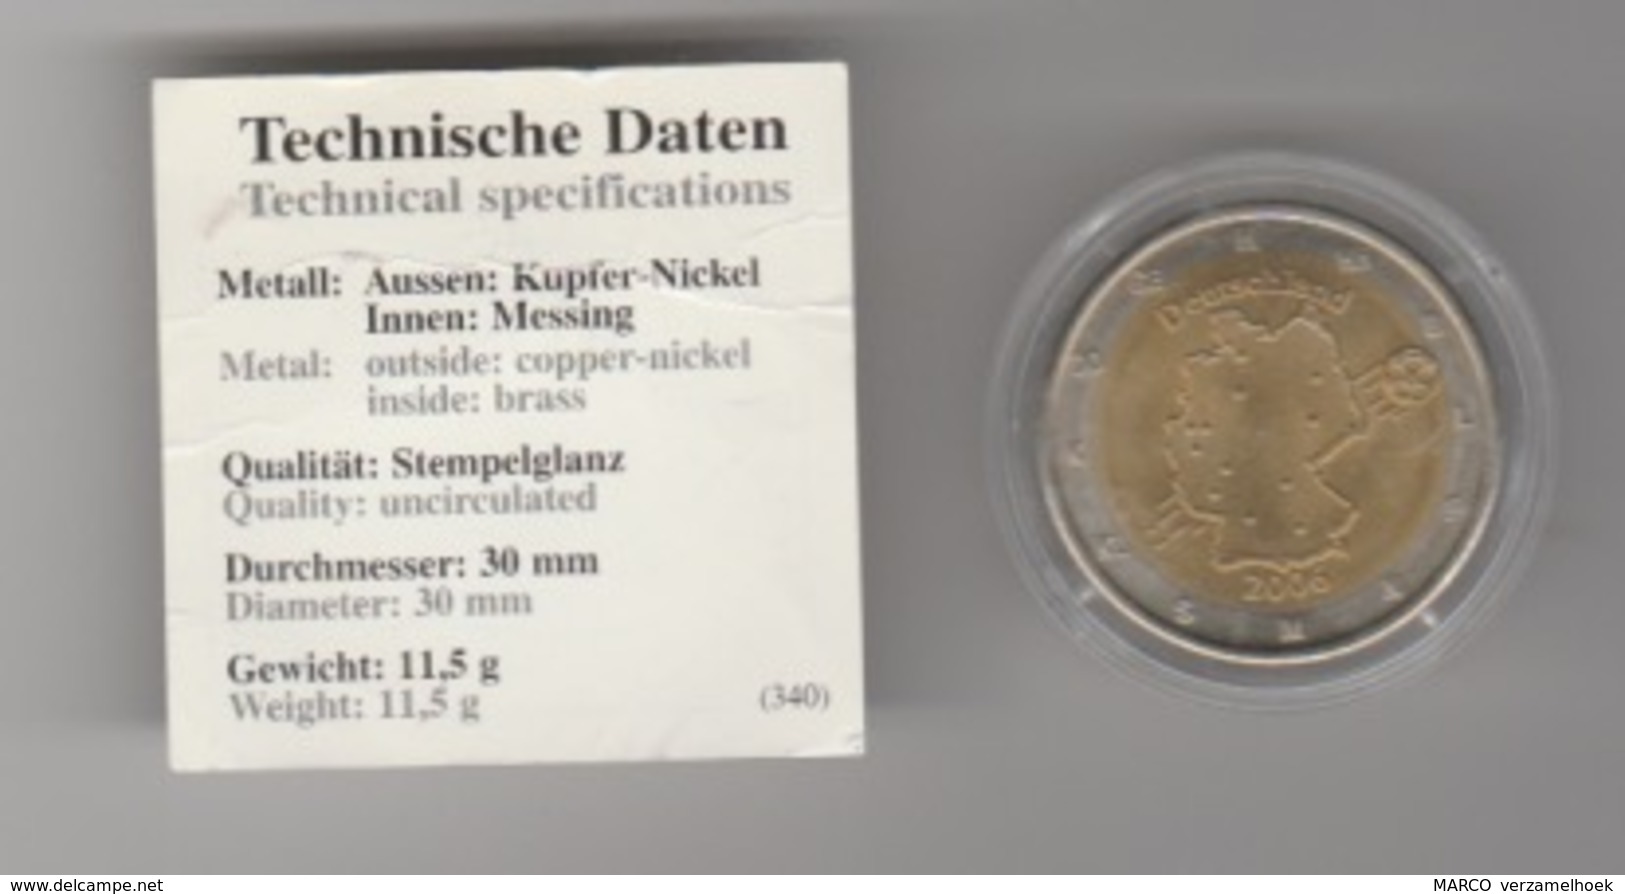 Fussball WM2006 2 Euro Deutschland Gedenkmünze Mit Zertifikate UNC - Elongated Coins